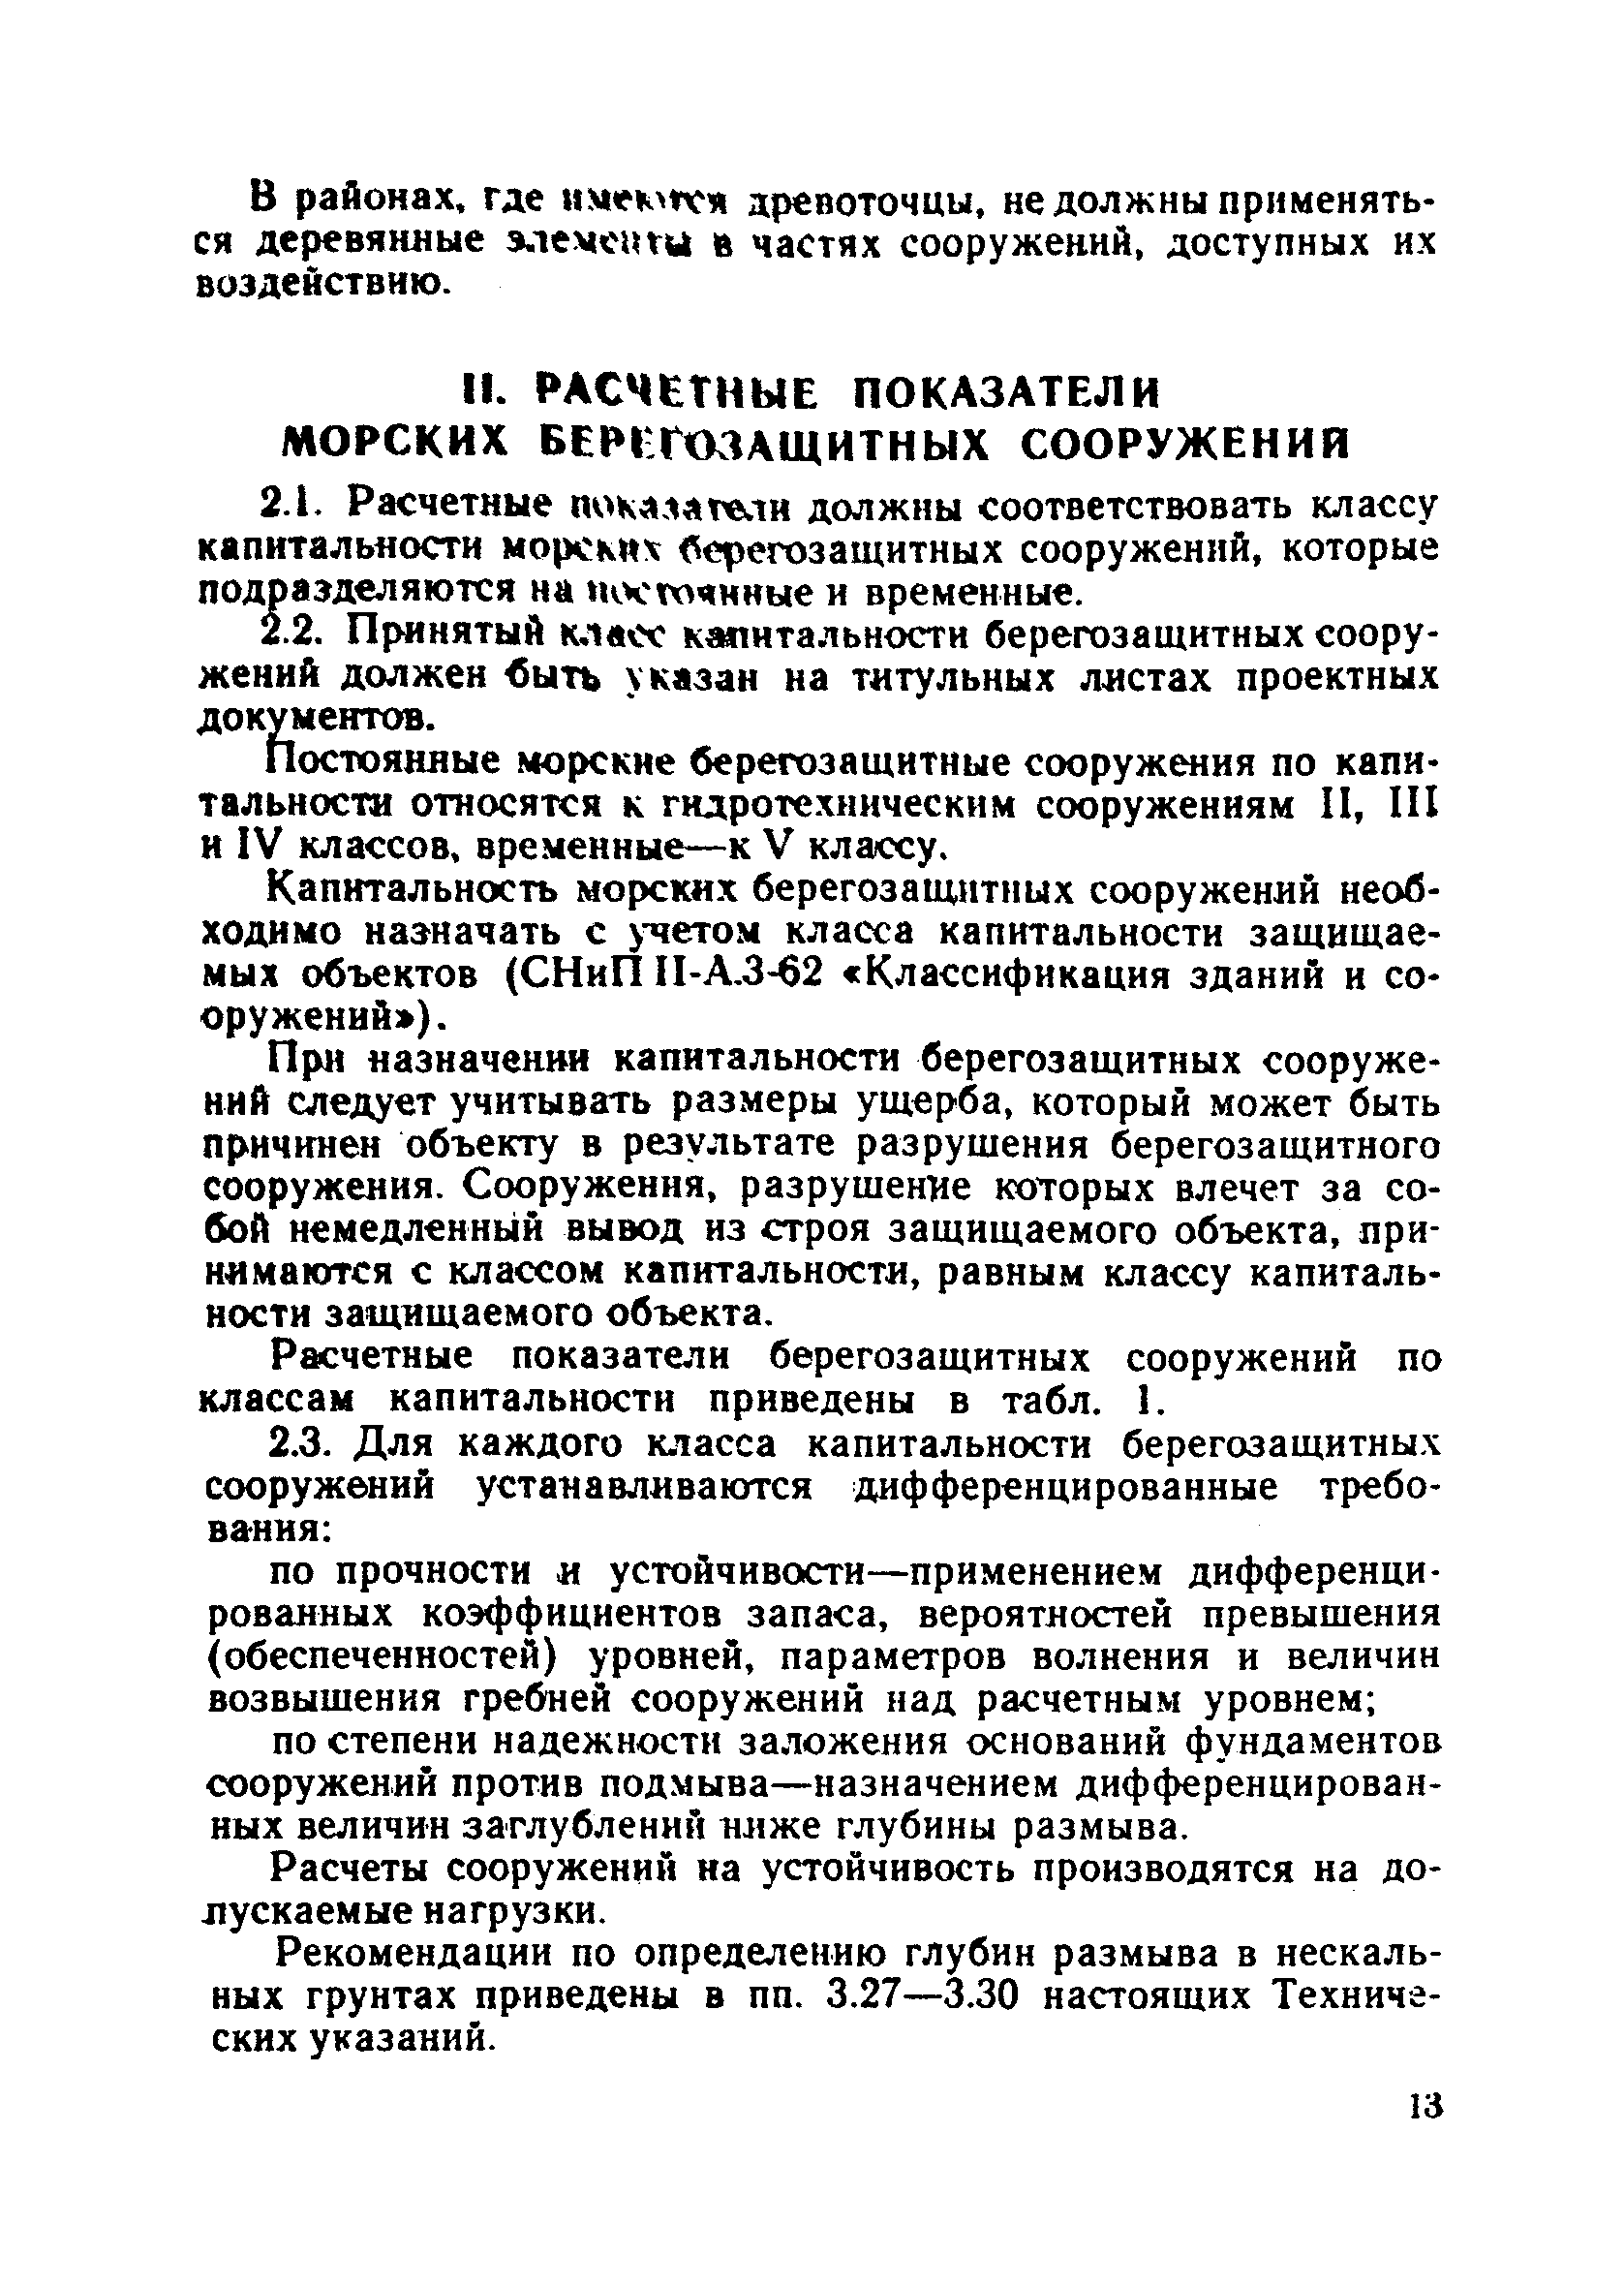 ВСН 183-74/Минтрансстрой